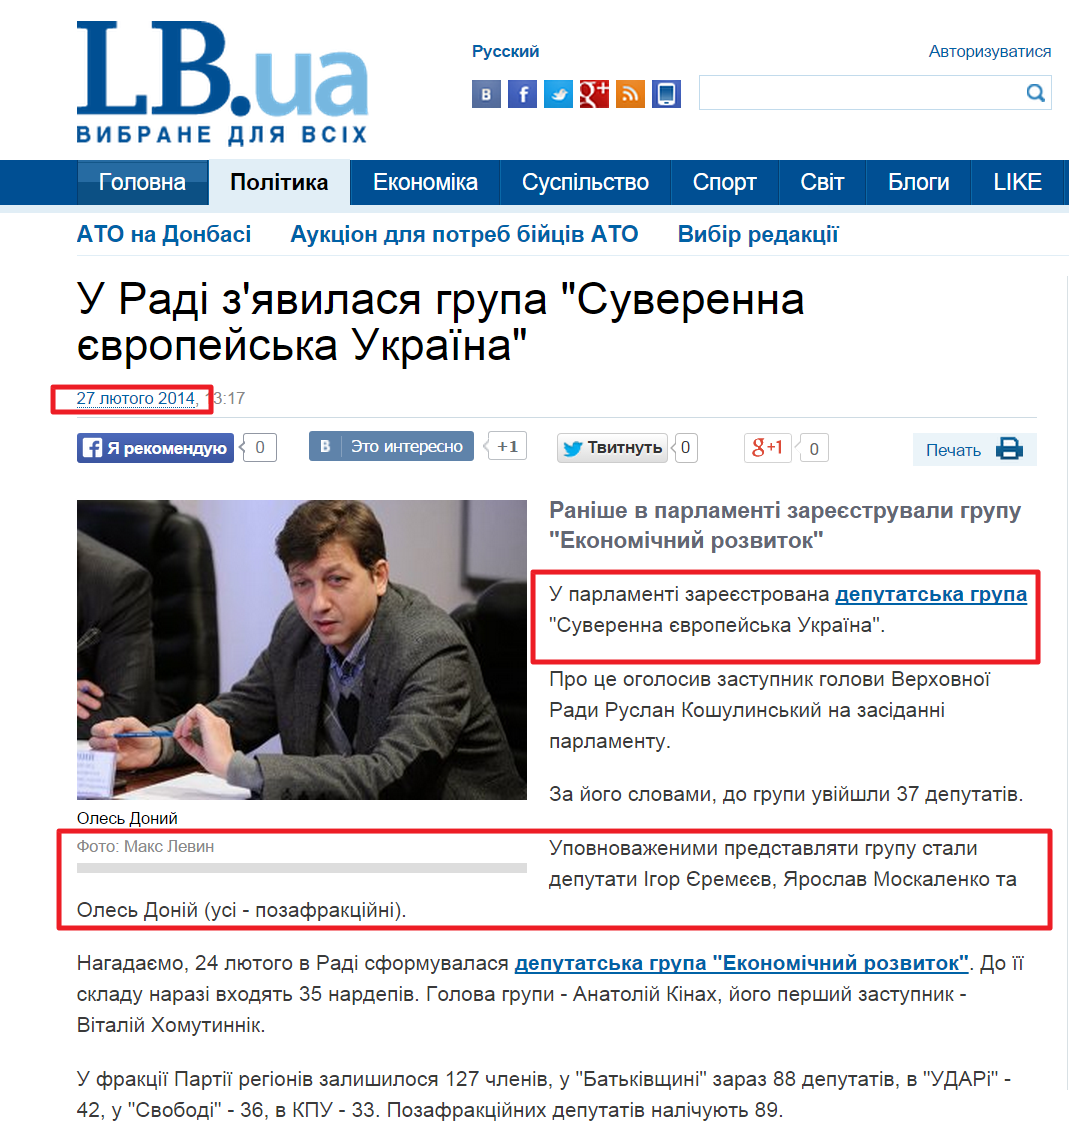 http://ukr.lb.ua/news/2014/02/27/257415_rade_poyavilas_gruppa_suverennaya.html